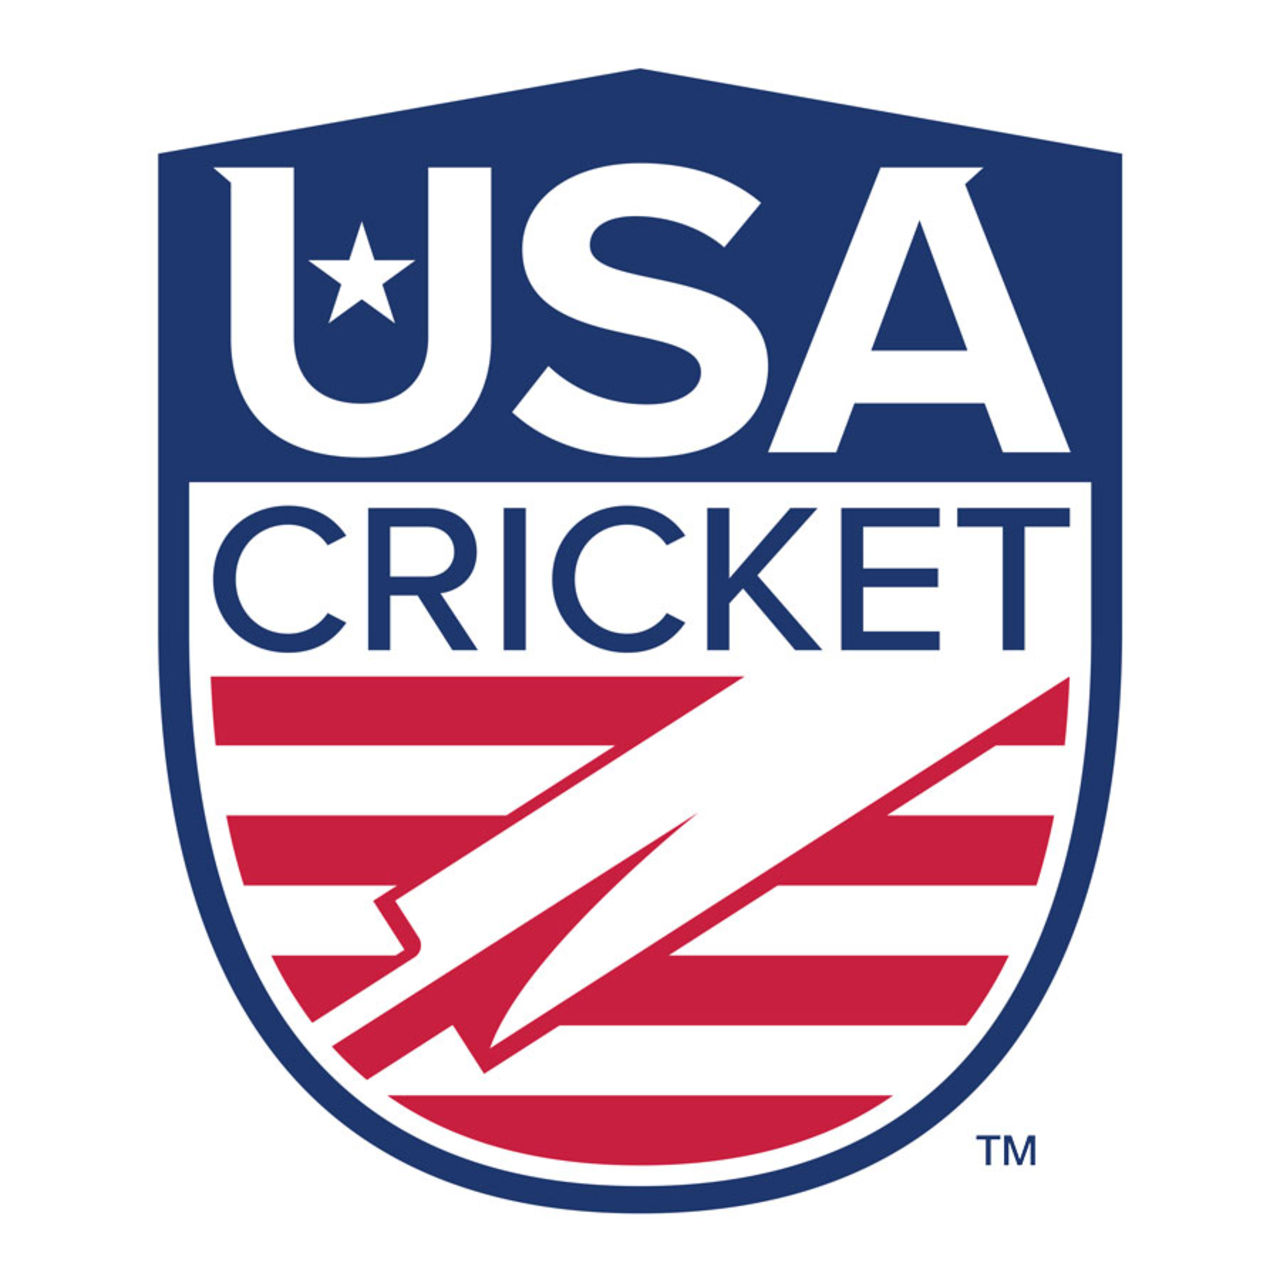 USA Cricket logo, September 24, 2017